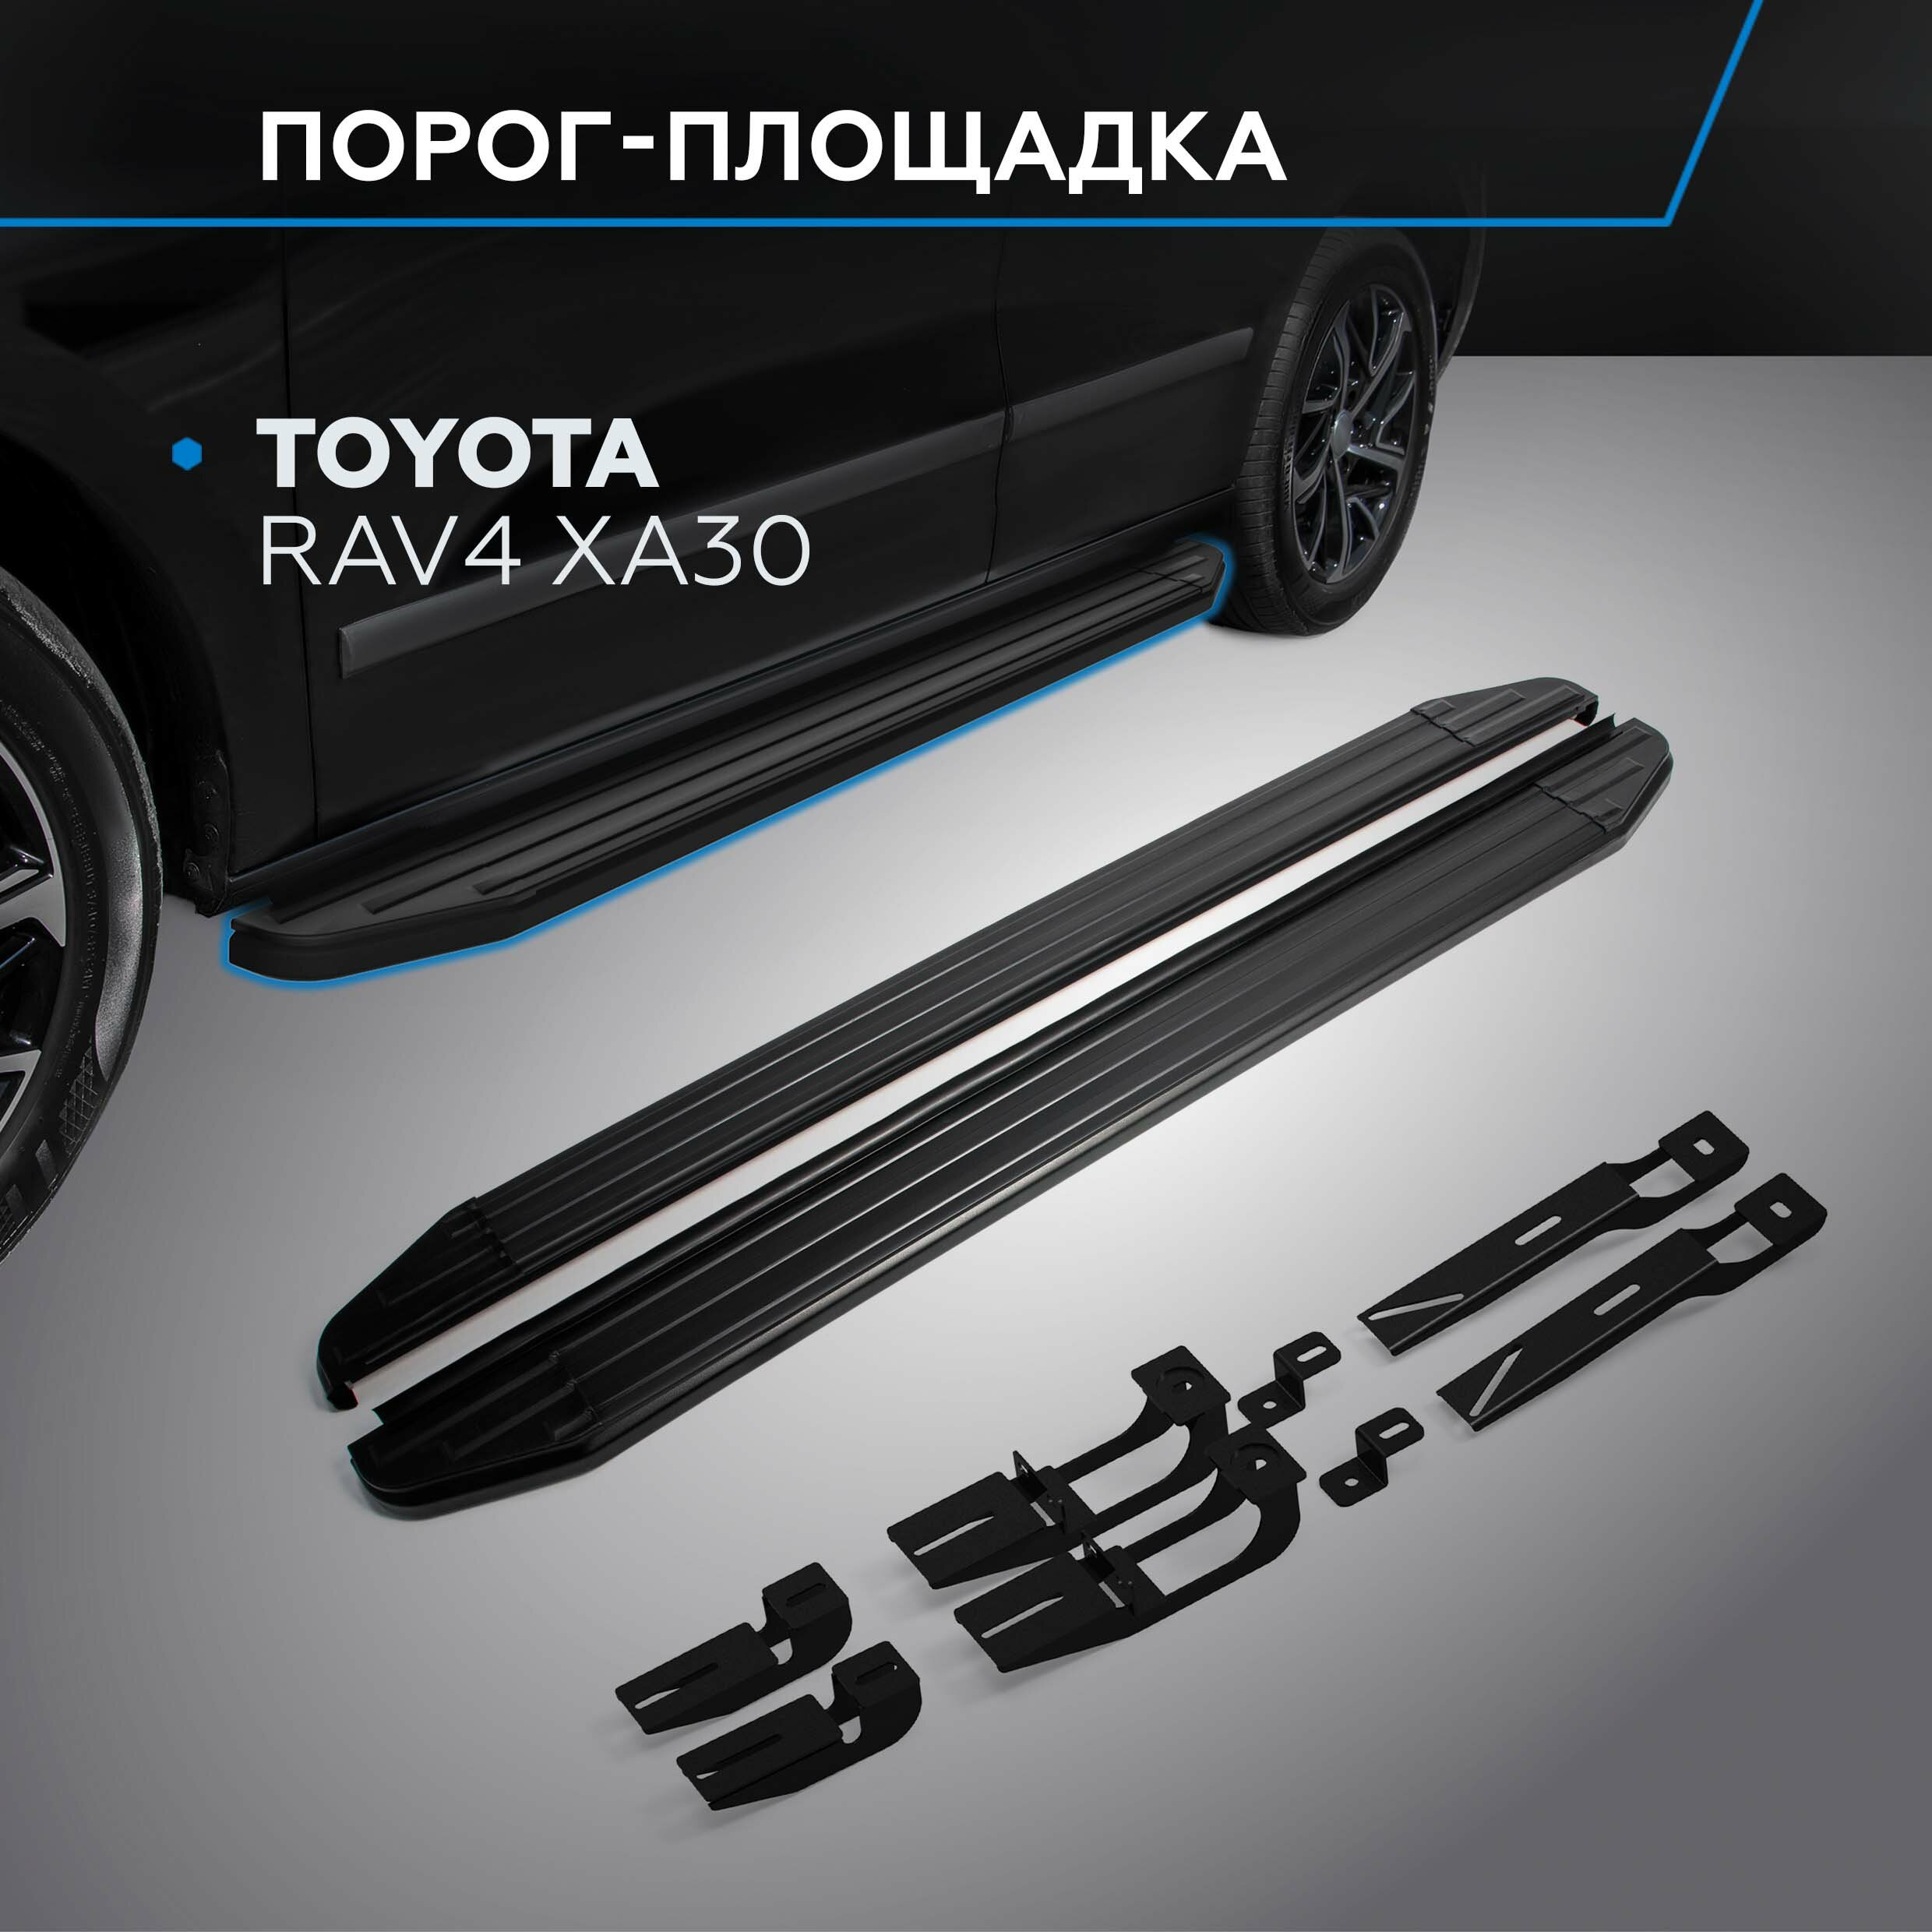 Пороги на автомобиль "Premium-Black" Rival для Toyota RAV4 XA30 2005-2013 160 см 2 шт алюминий A160ALB.5702.1